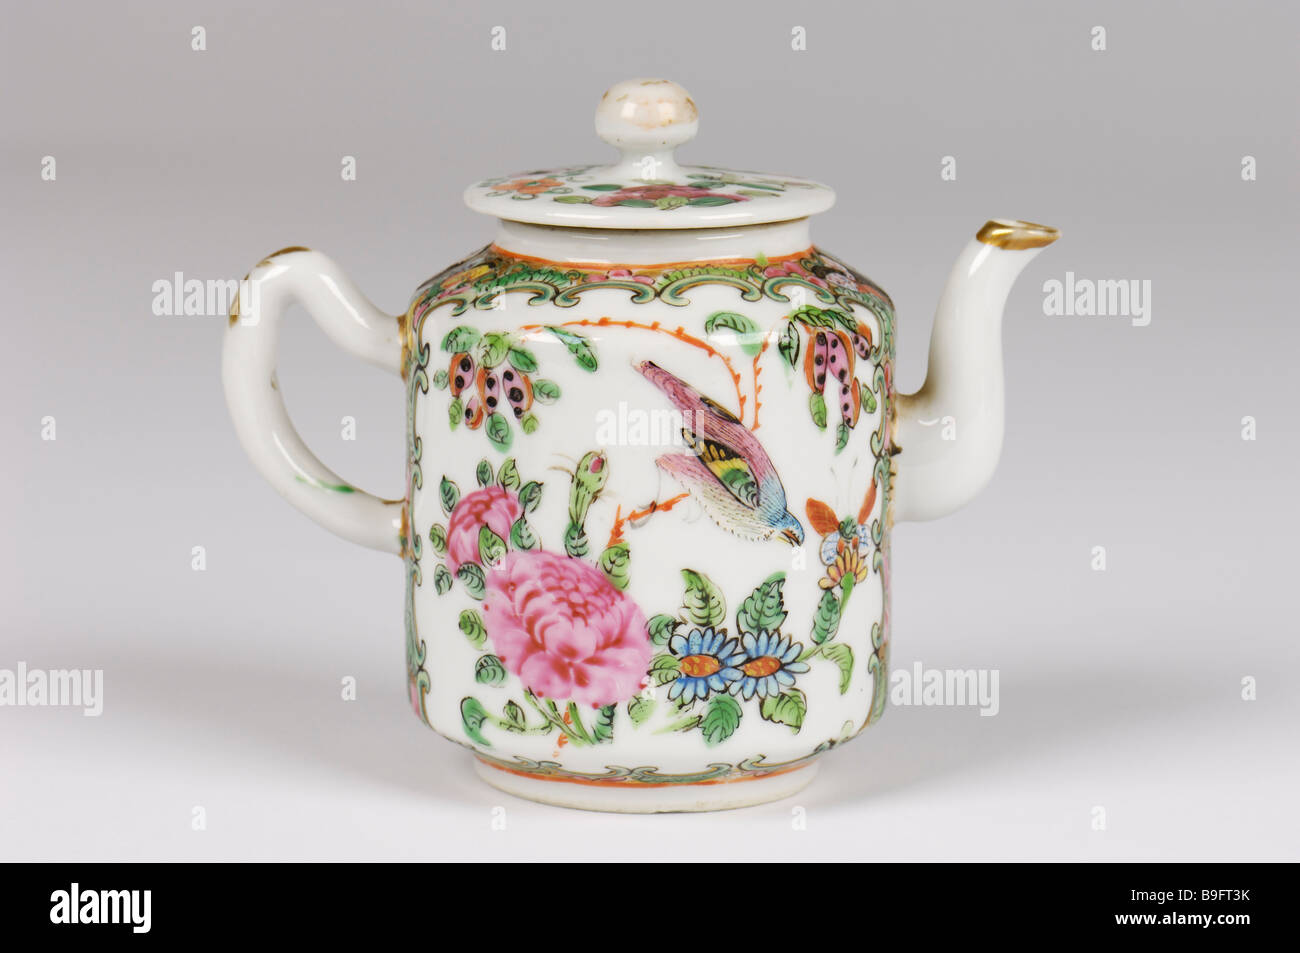 Eine handgemalte antikes chinesisches Porzellan Tee oder Wein Topf mit Vögel in helle Glasuren dekoriert. 19. JH. Stockfoto